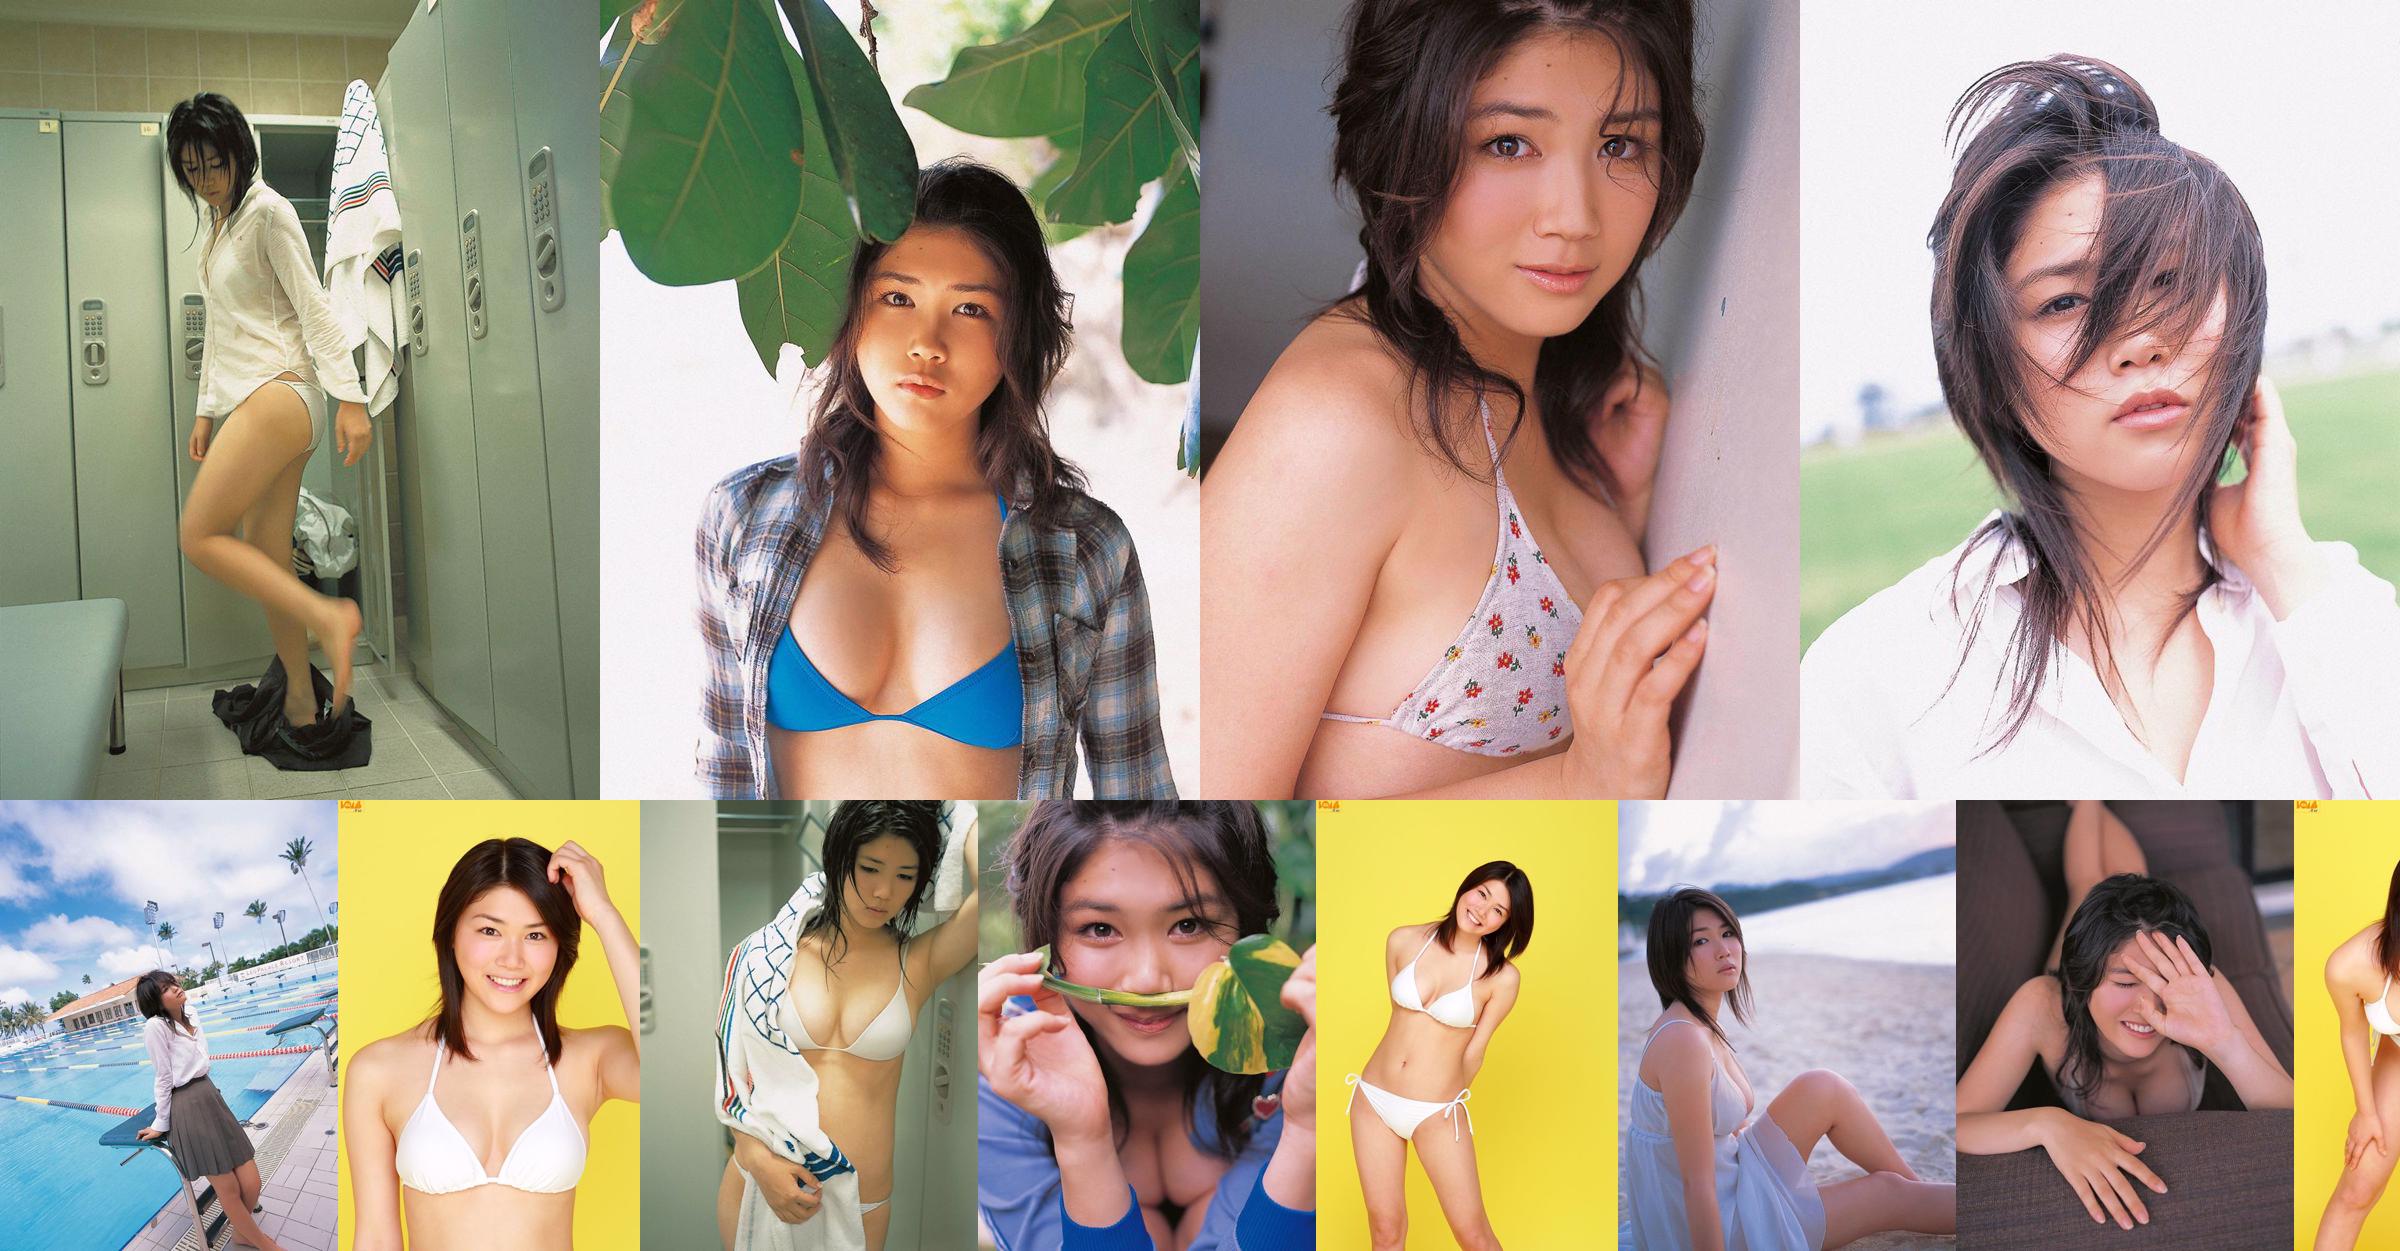 [Bomb.TV] Số tháng 8 năm 2006 của Mami Nagaoka Mami Nagaoka / Mami Nagaoka No.b098f2 Trang 1